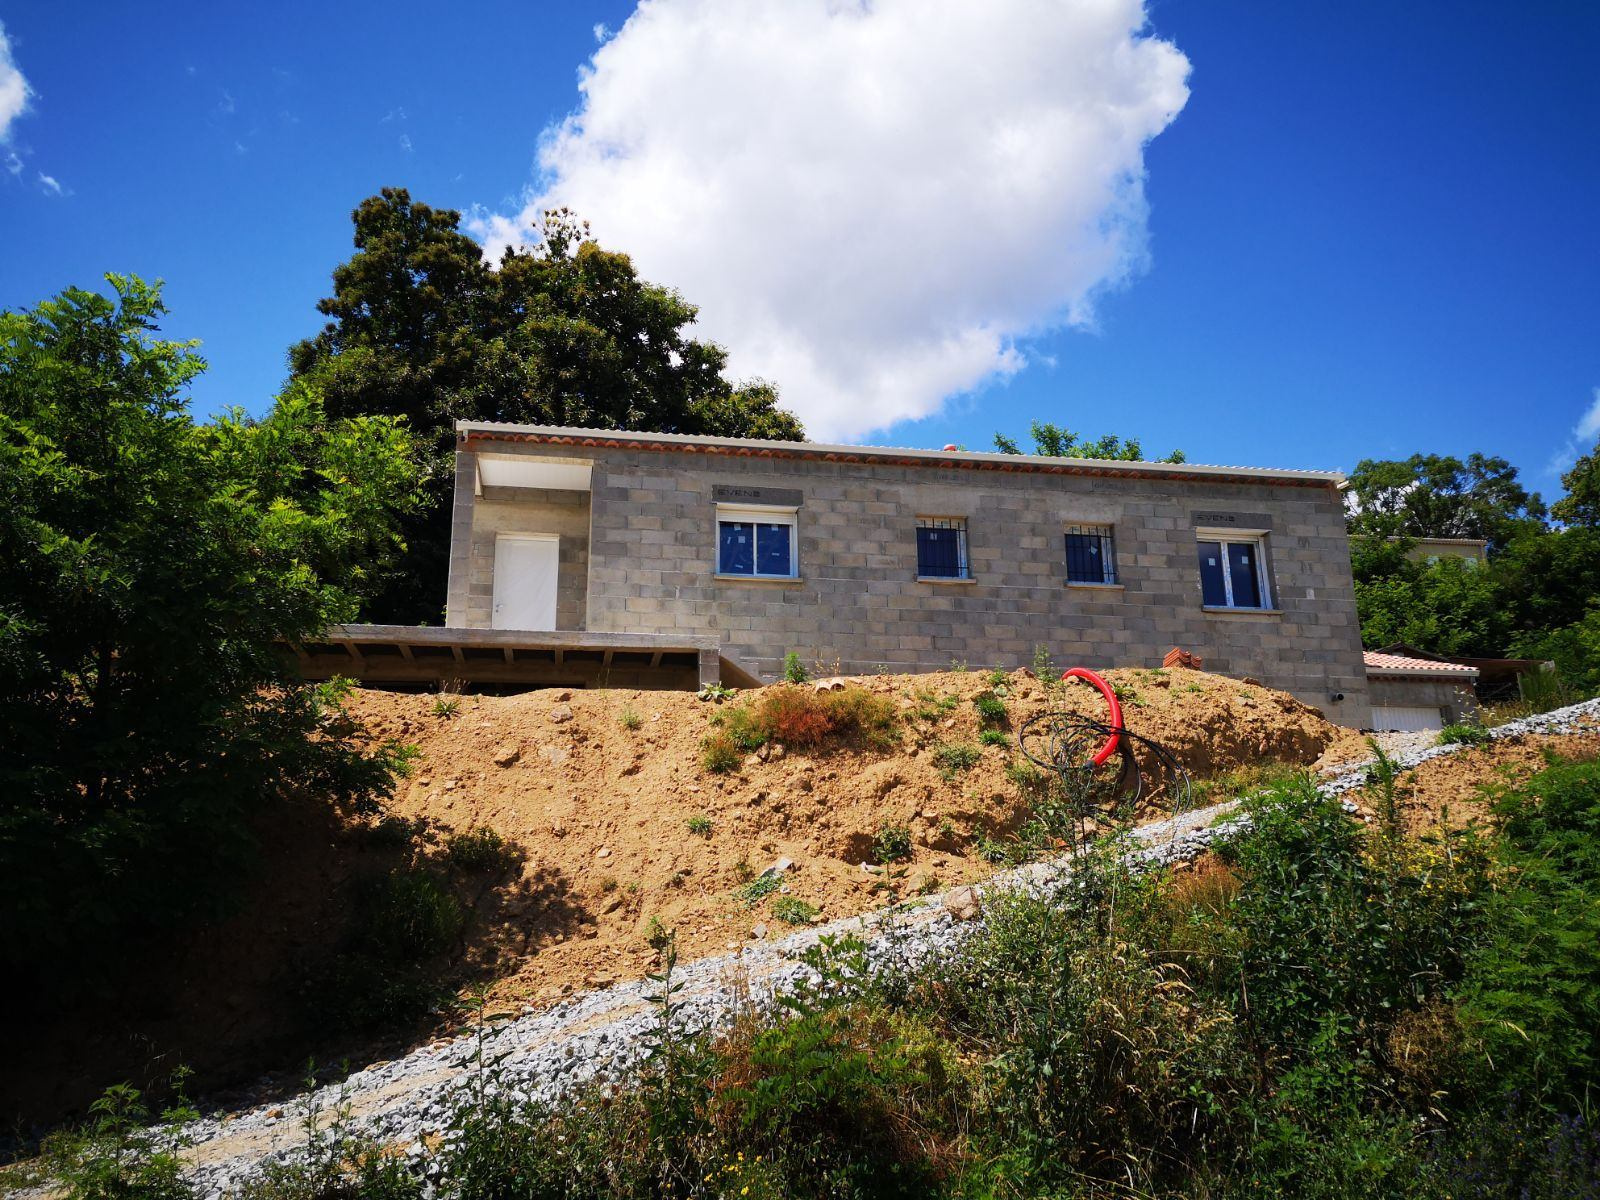 Maison neuve (en cours de construction) avec terrasse sur pi